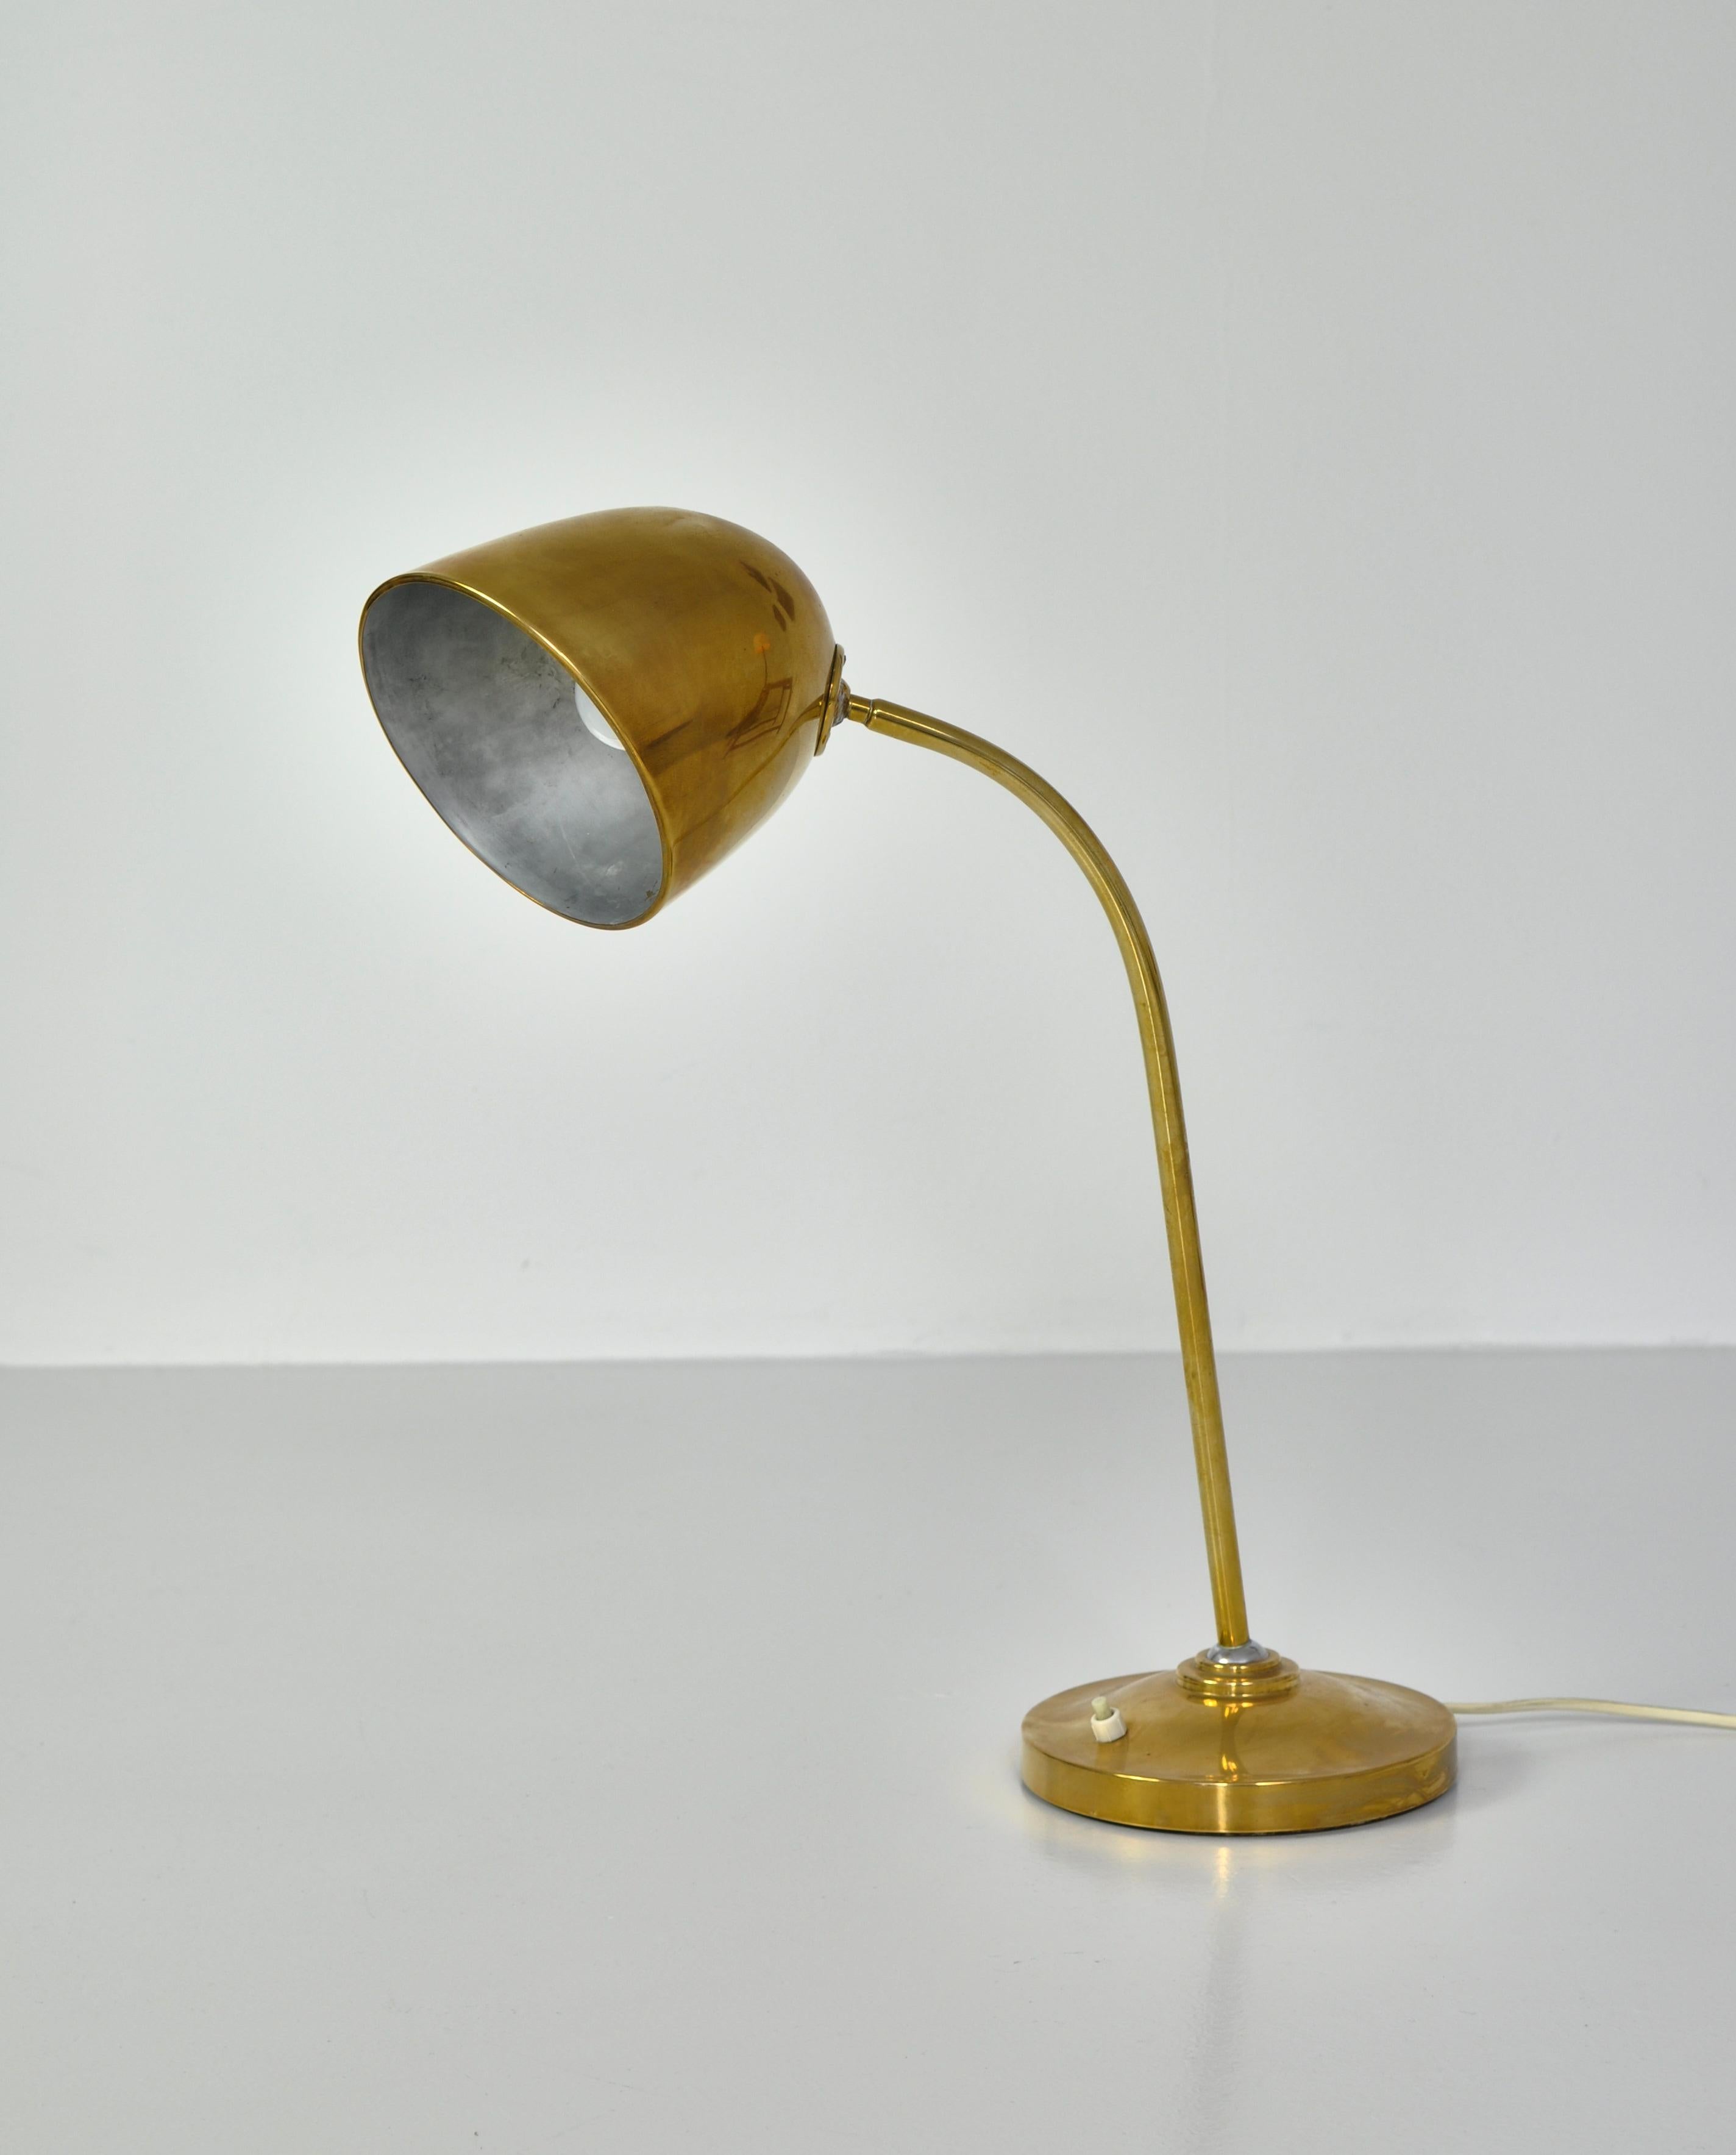 Danish Table Lamp in Brass by Vilhelm Lauritzen for Fog & Mørup, 1940s